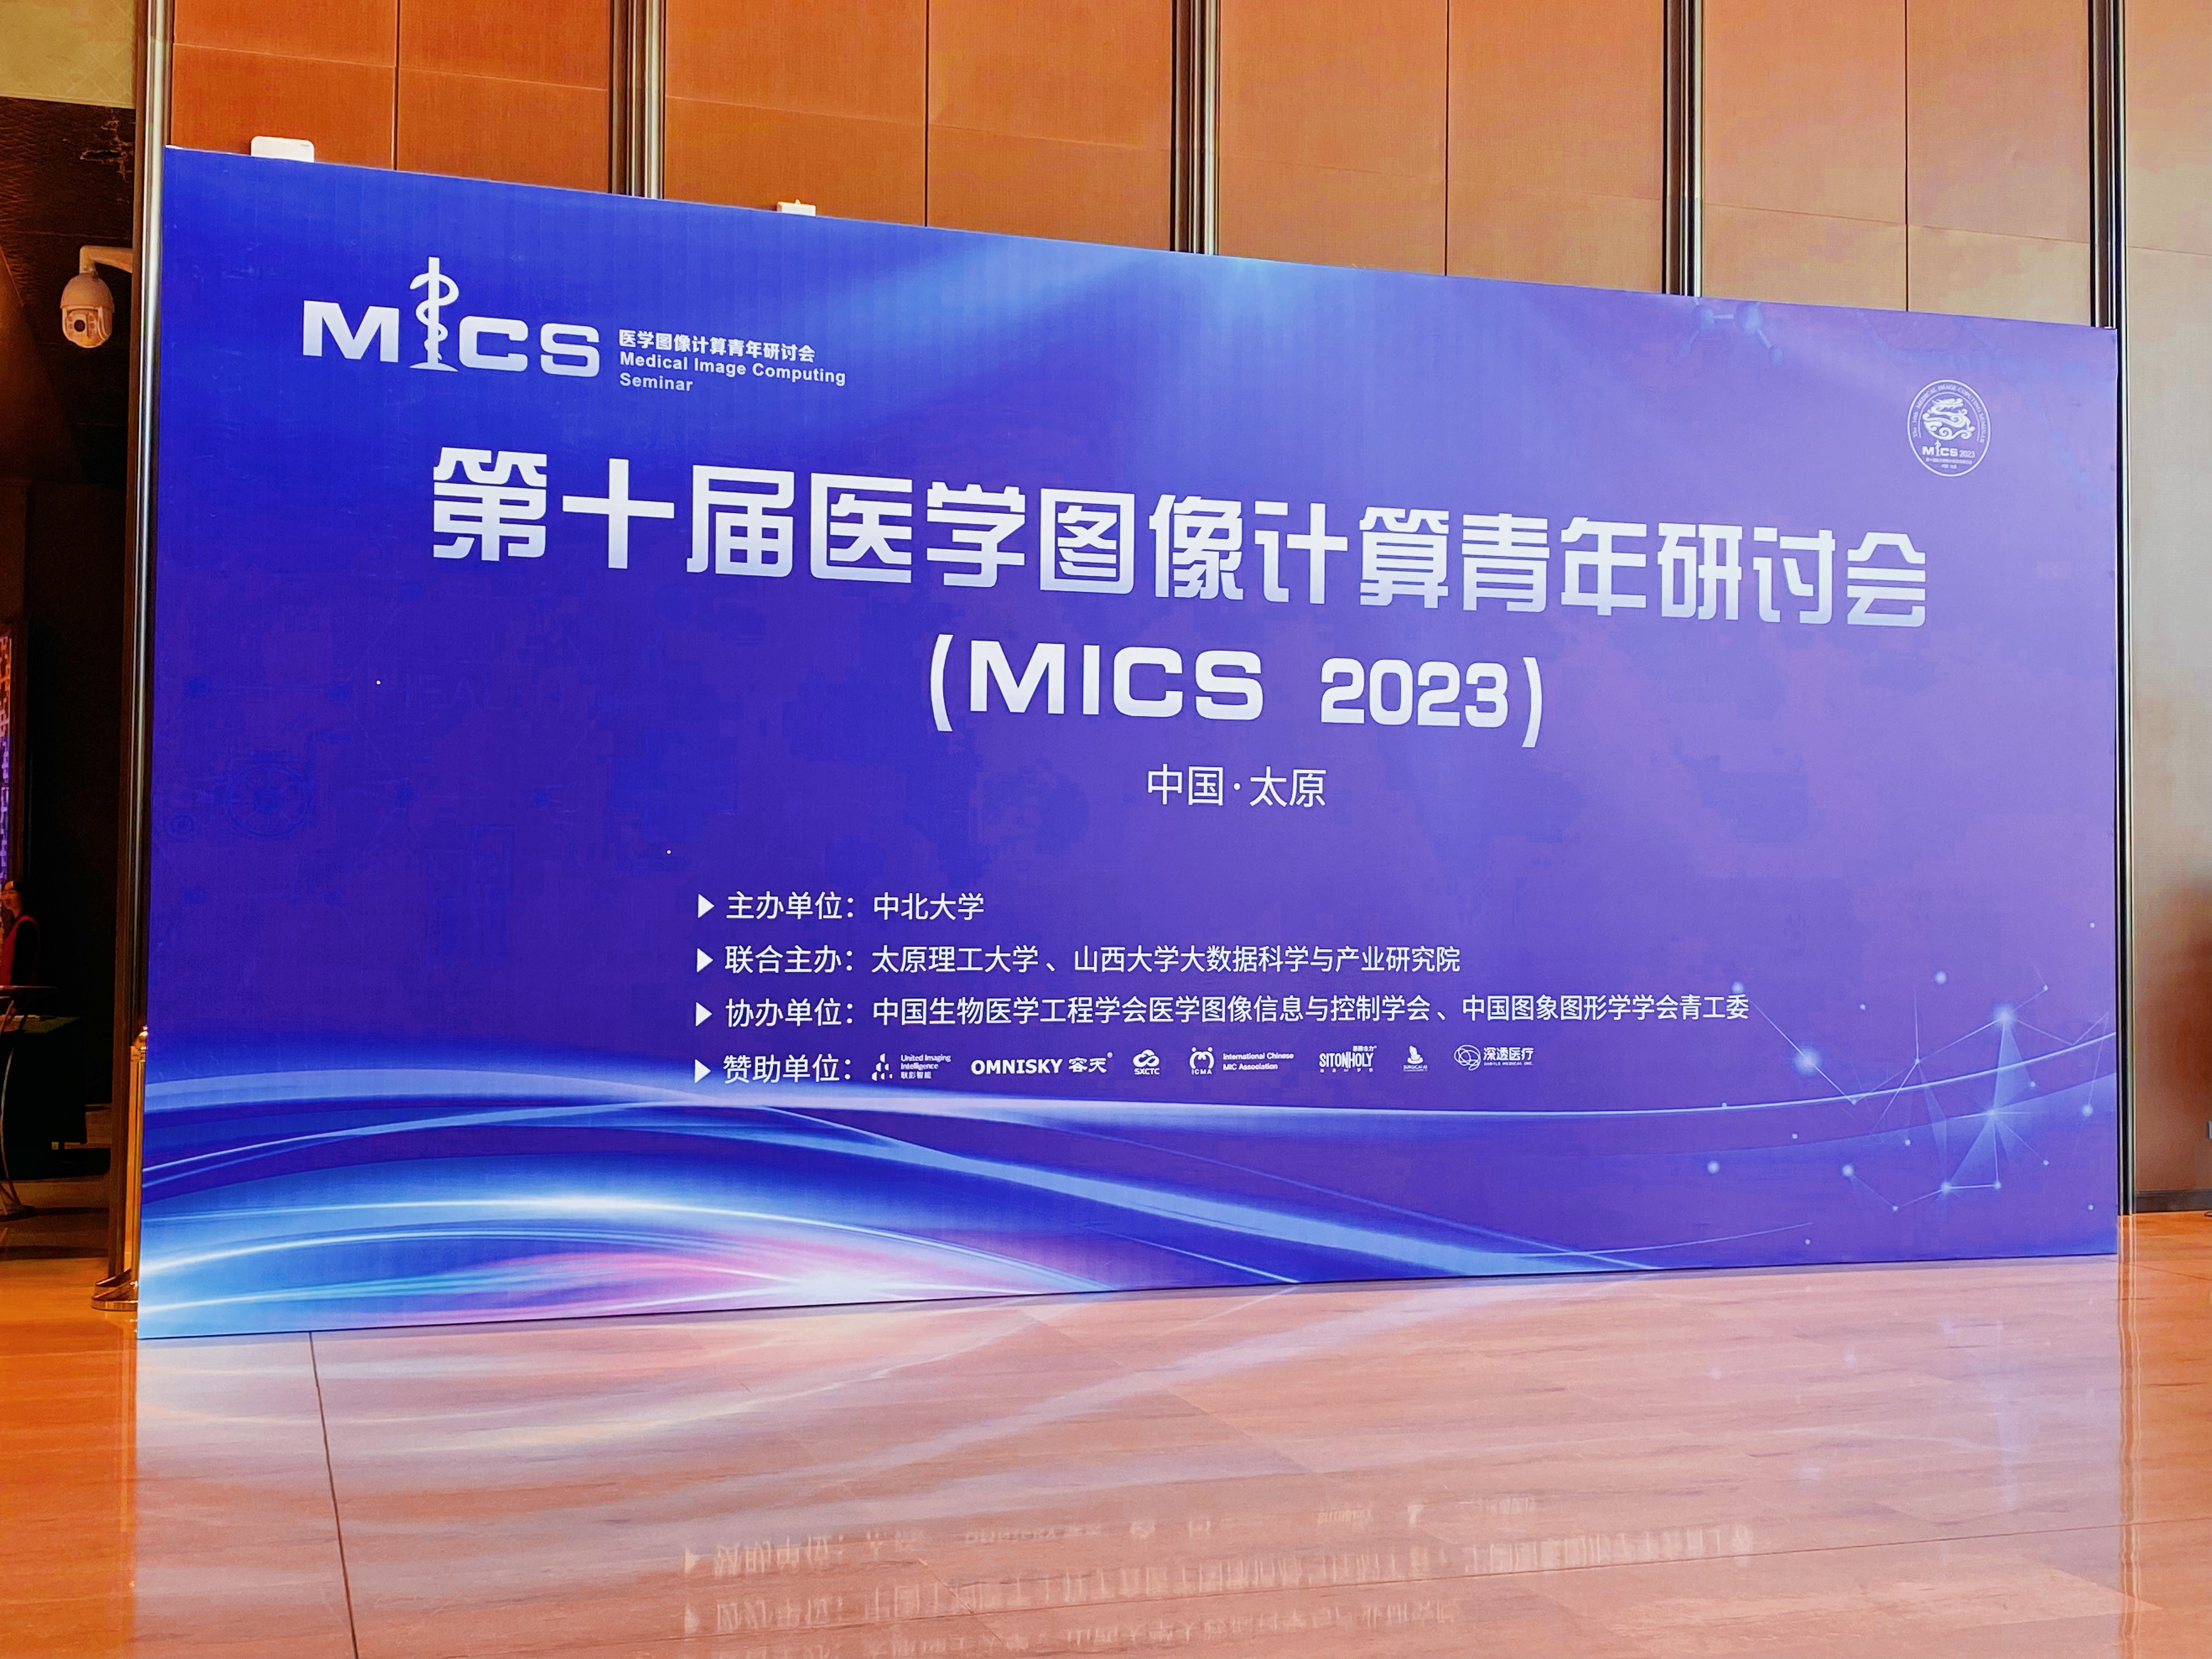 容天助力 MICS 会议 | 推出医疗通用框架